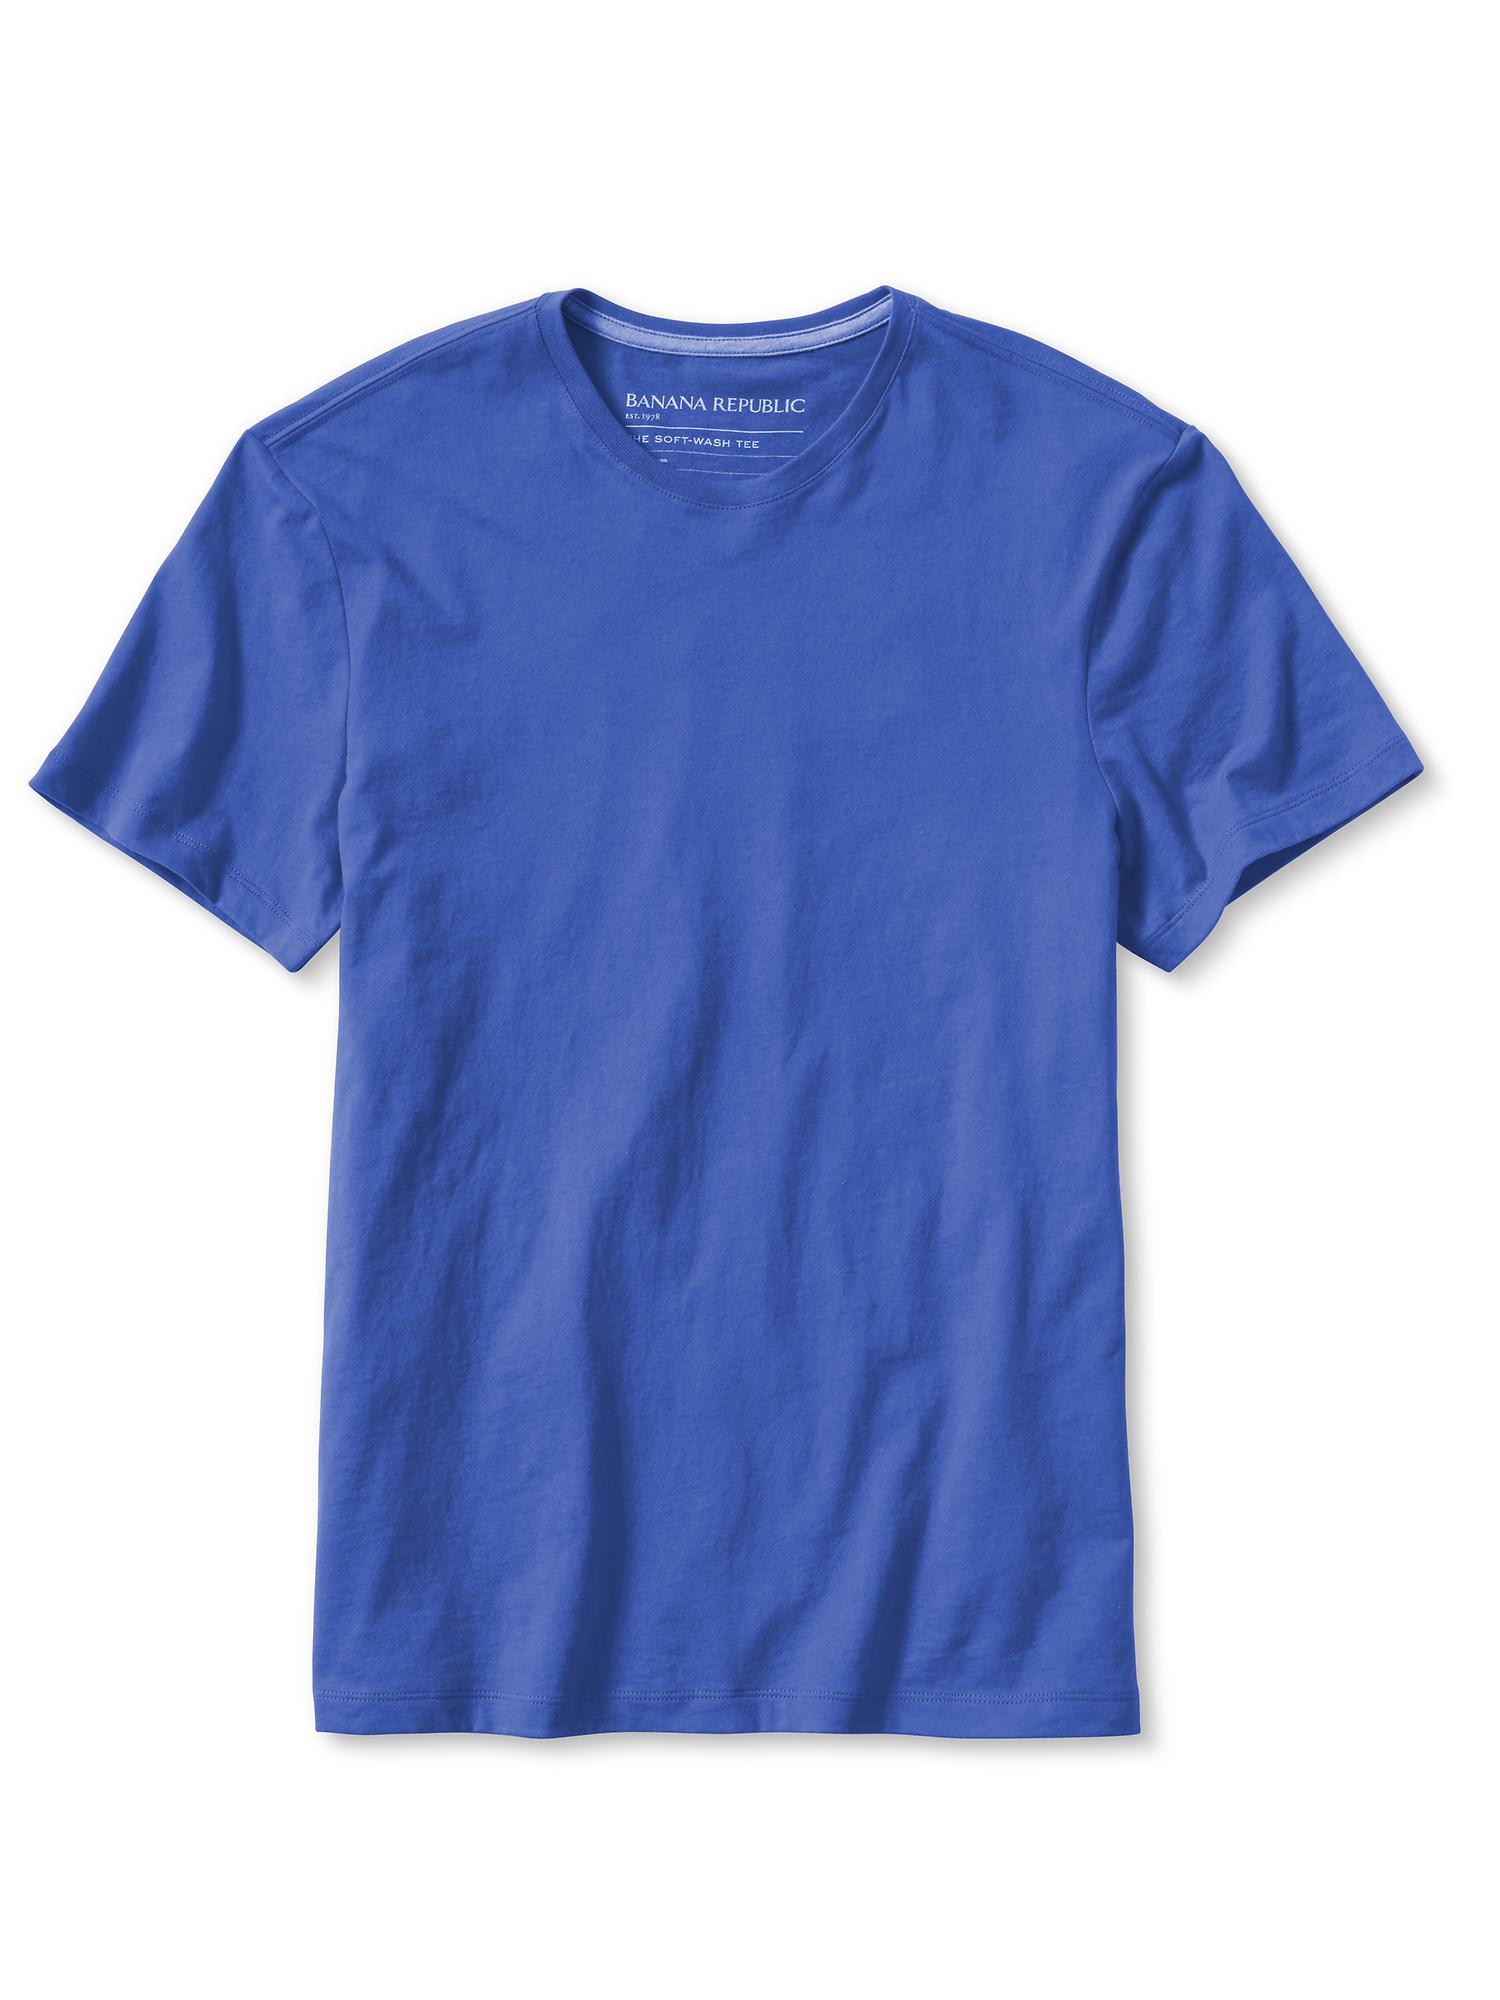 Soft-Wash Cotton T-Shirt